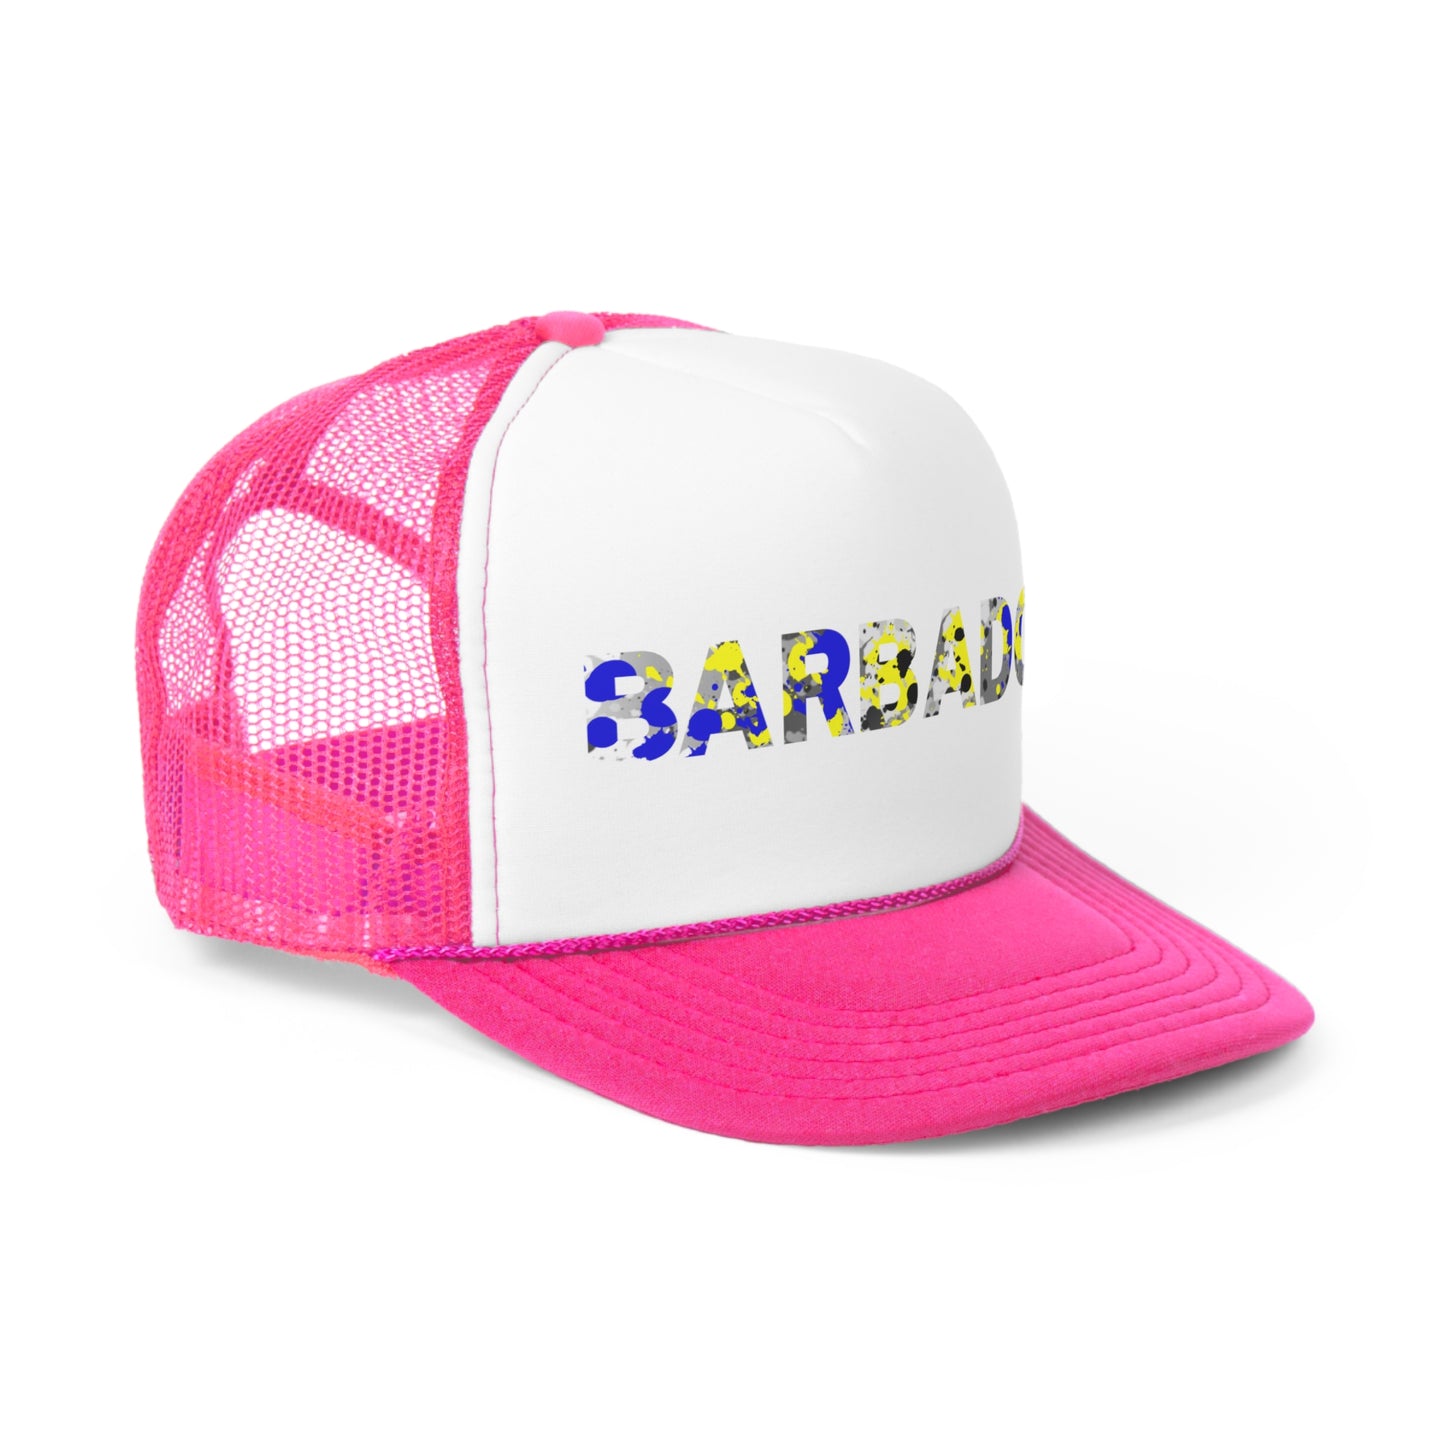 Barbados Trucker Caps